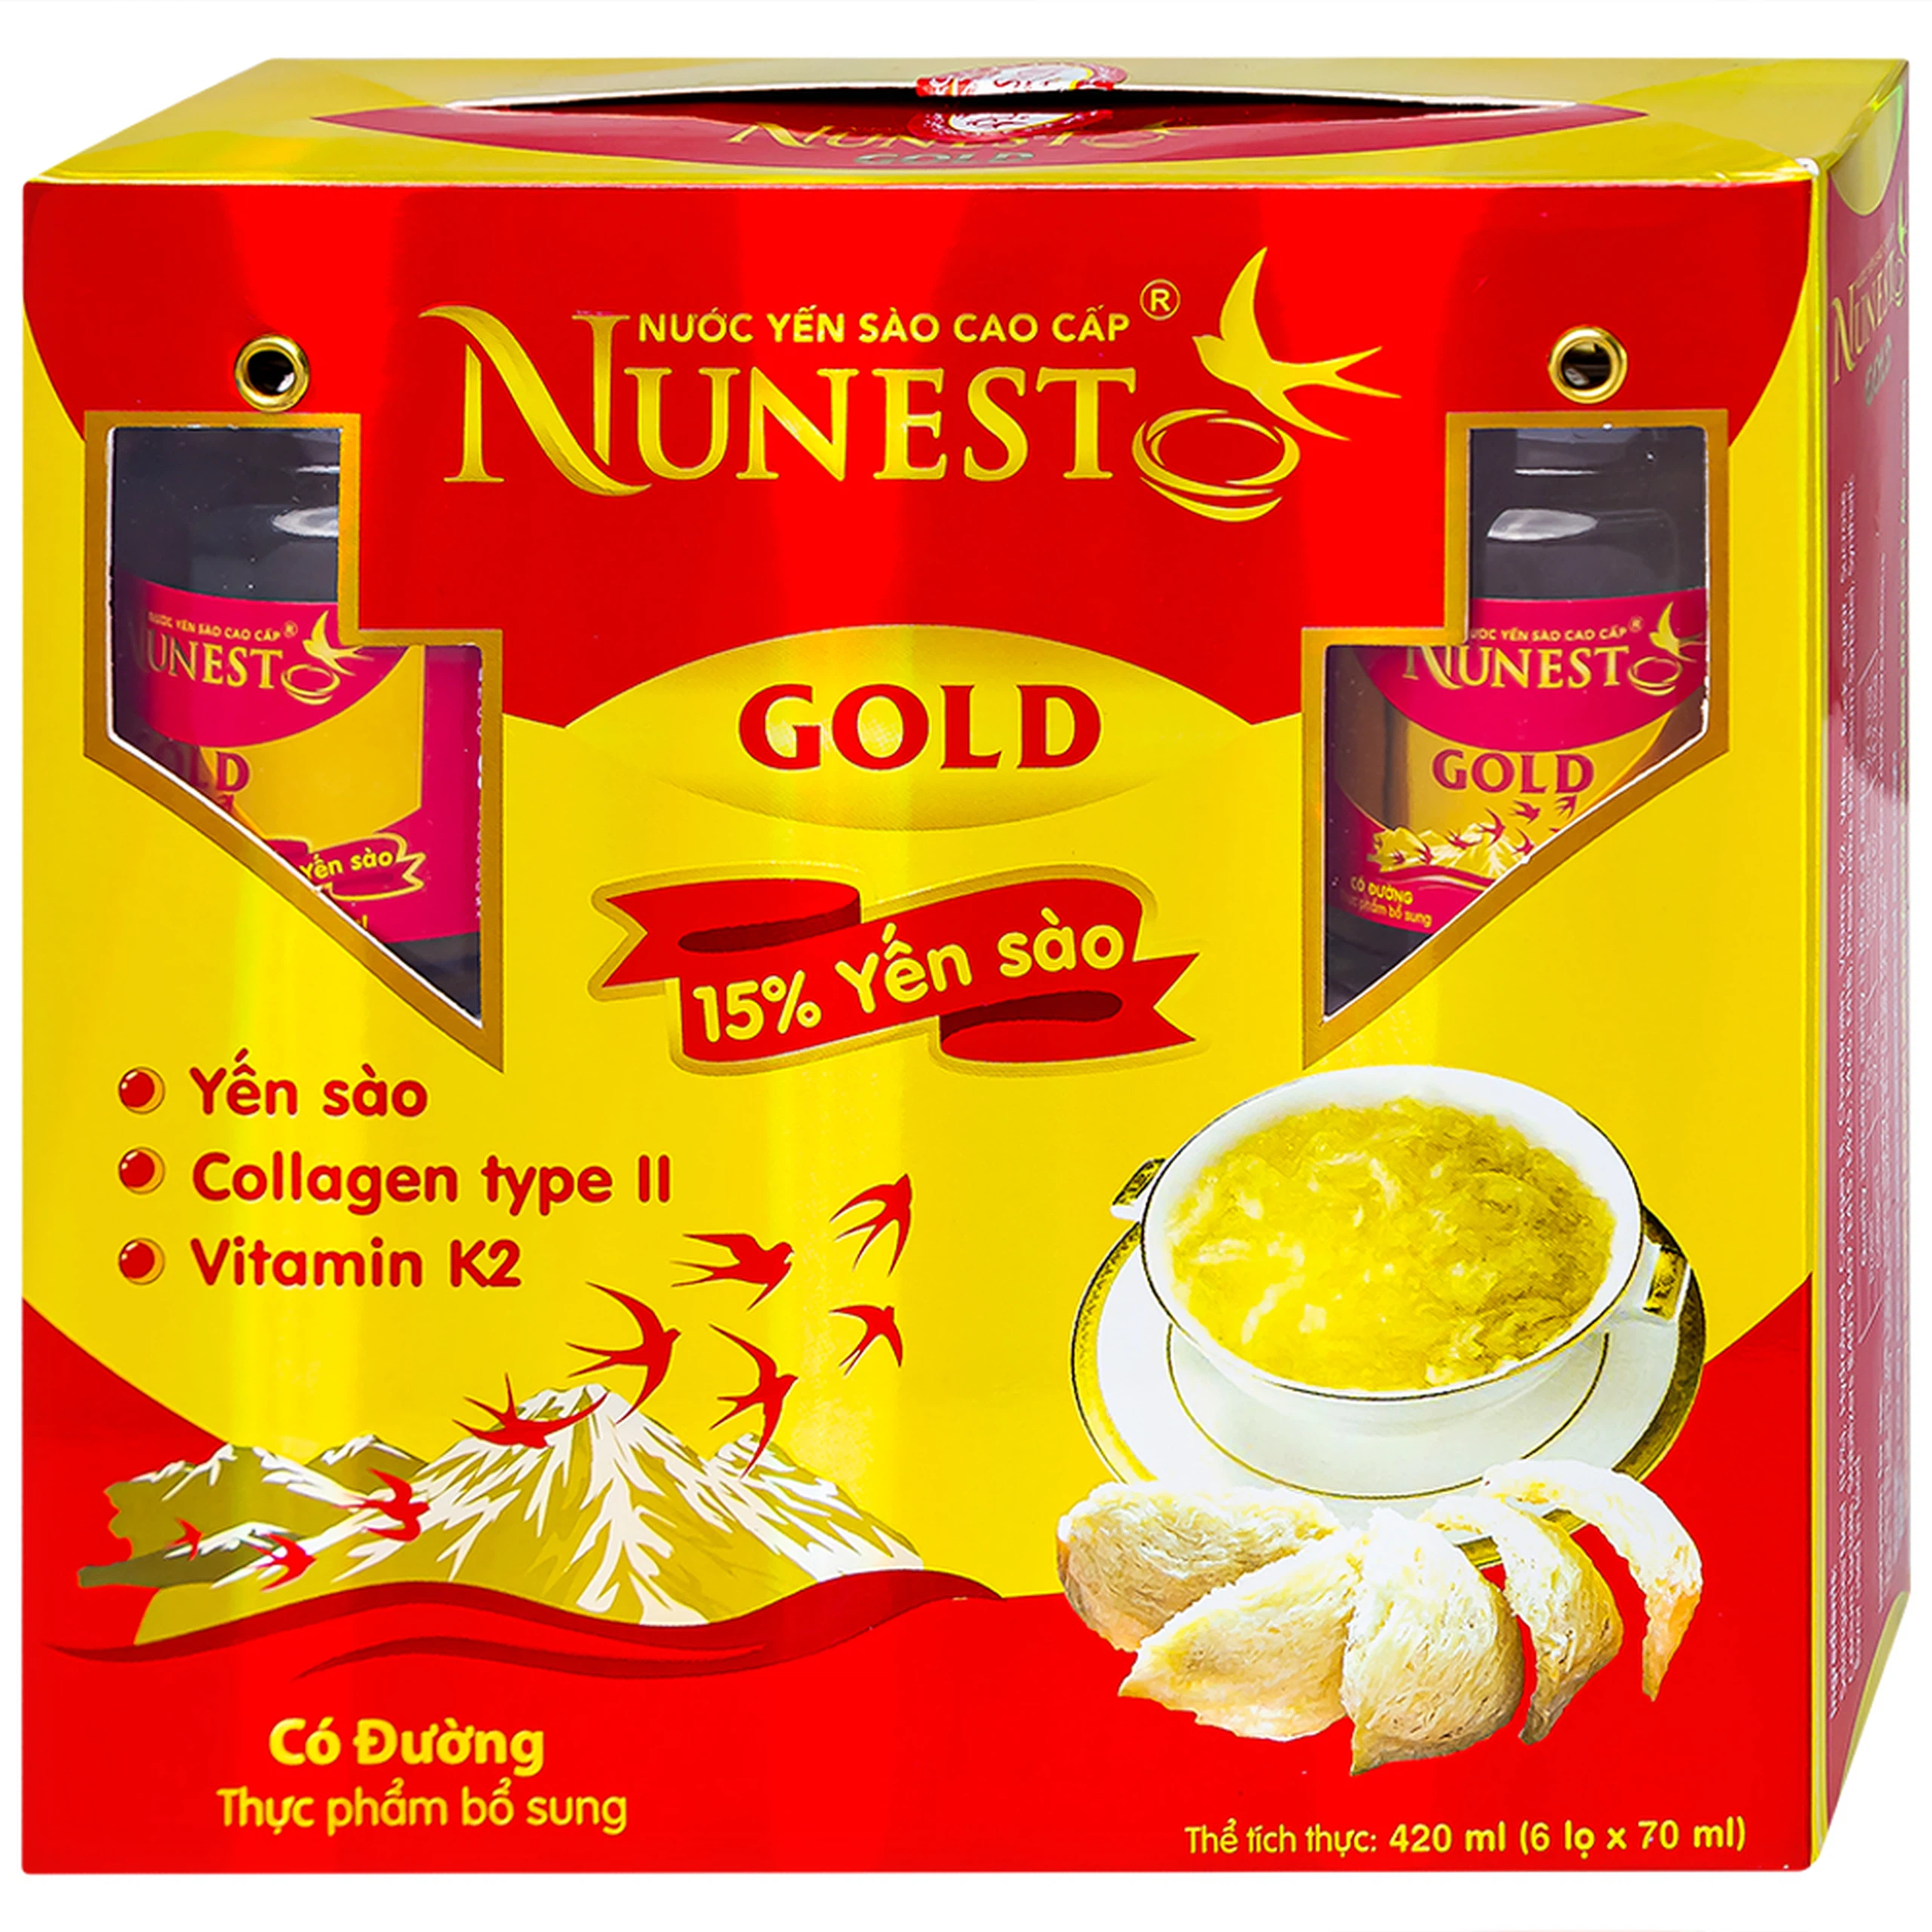 Nước Yến Sào cao cấp Nunest Gold 15% có đường, bồi bổ sức khỏe và đẩy lùi lão hóa (6 hũ x 70ml)